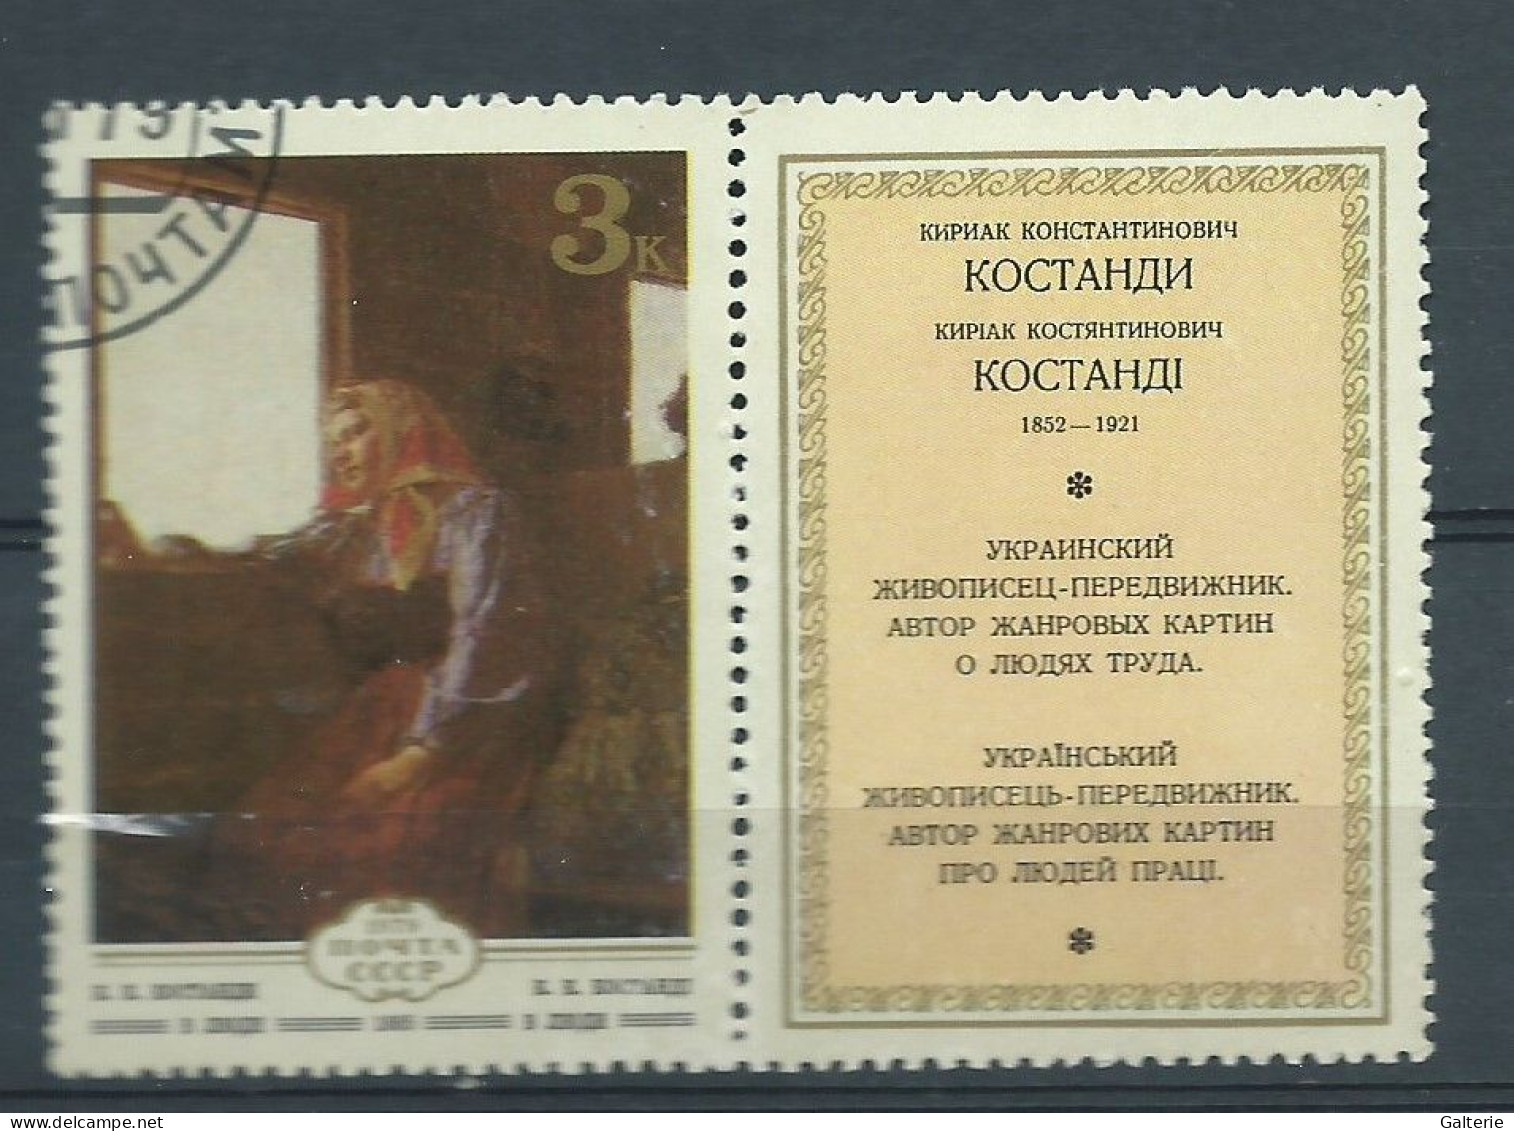 URSS - Obl - 1979 - YT N° 4639-Art D'Ukraine - Used Stamps